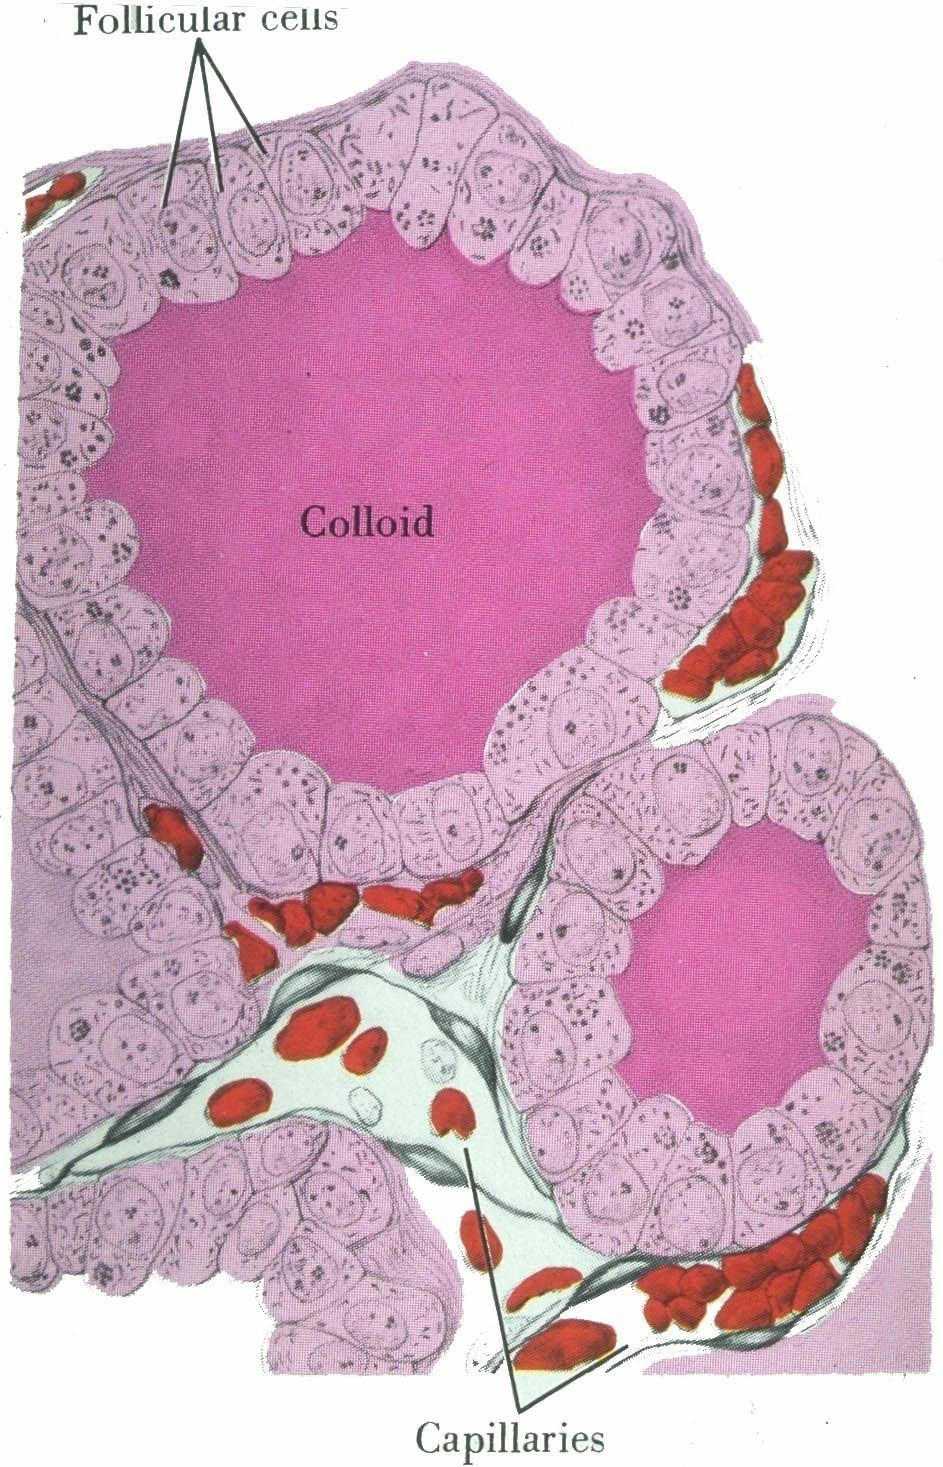 Tiroit hormonları Folikül adı verilen epitel hücreler tarafından sentezlenir, veziküllerde depolanır ve çevresindeki kapilerler